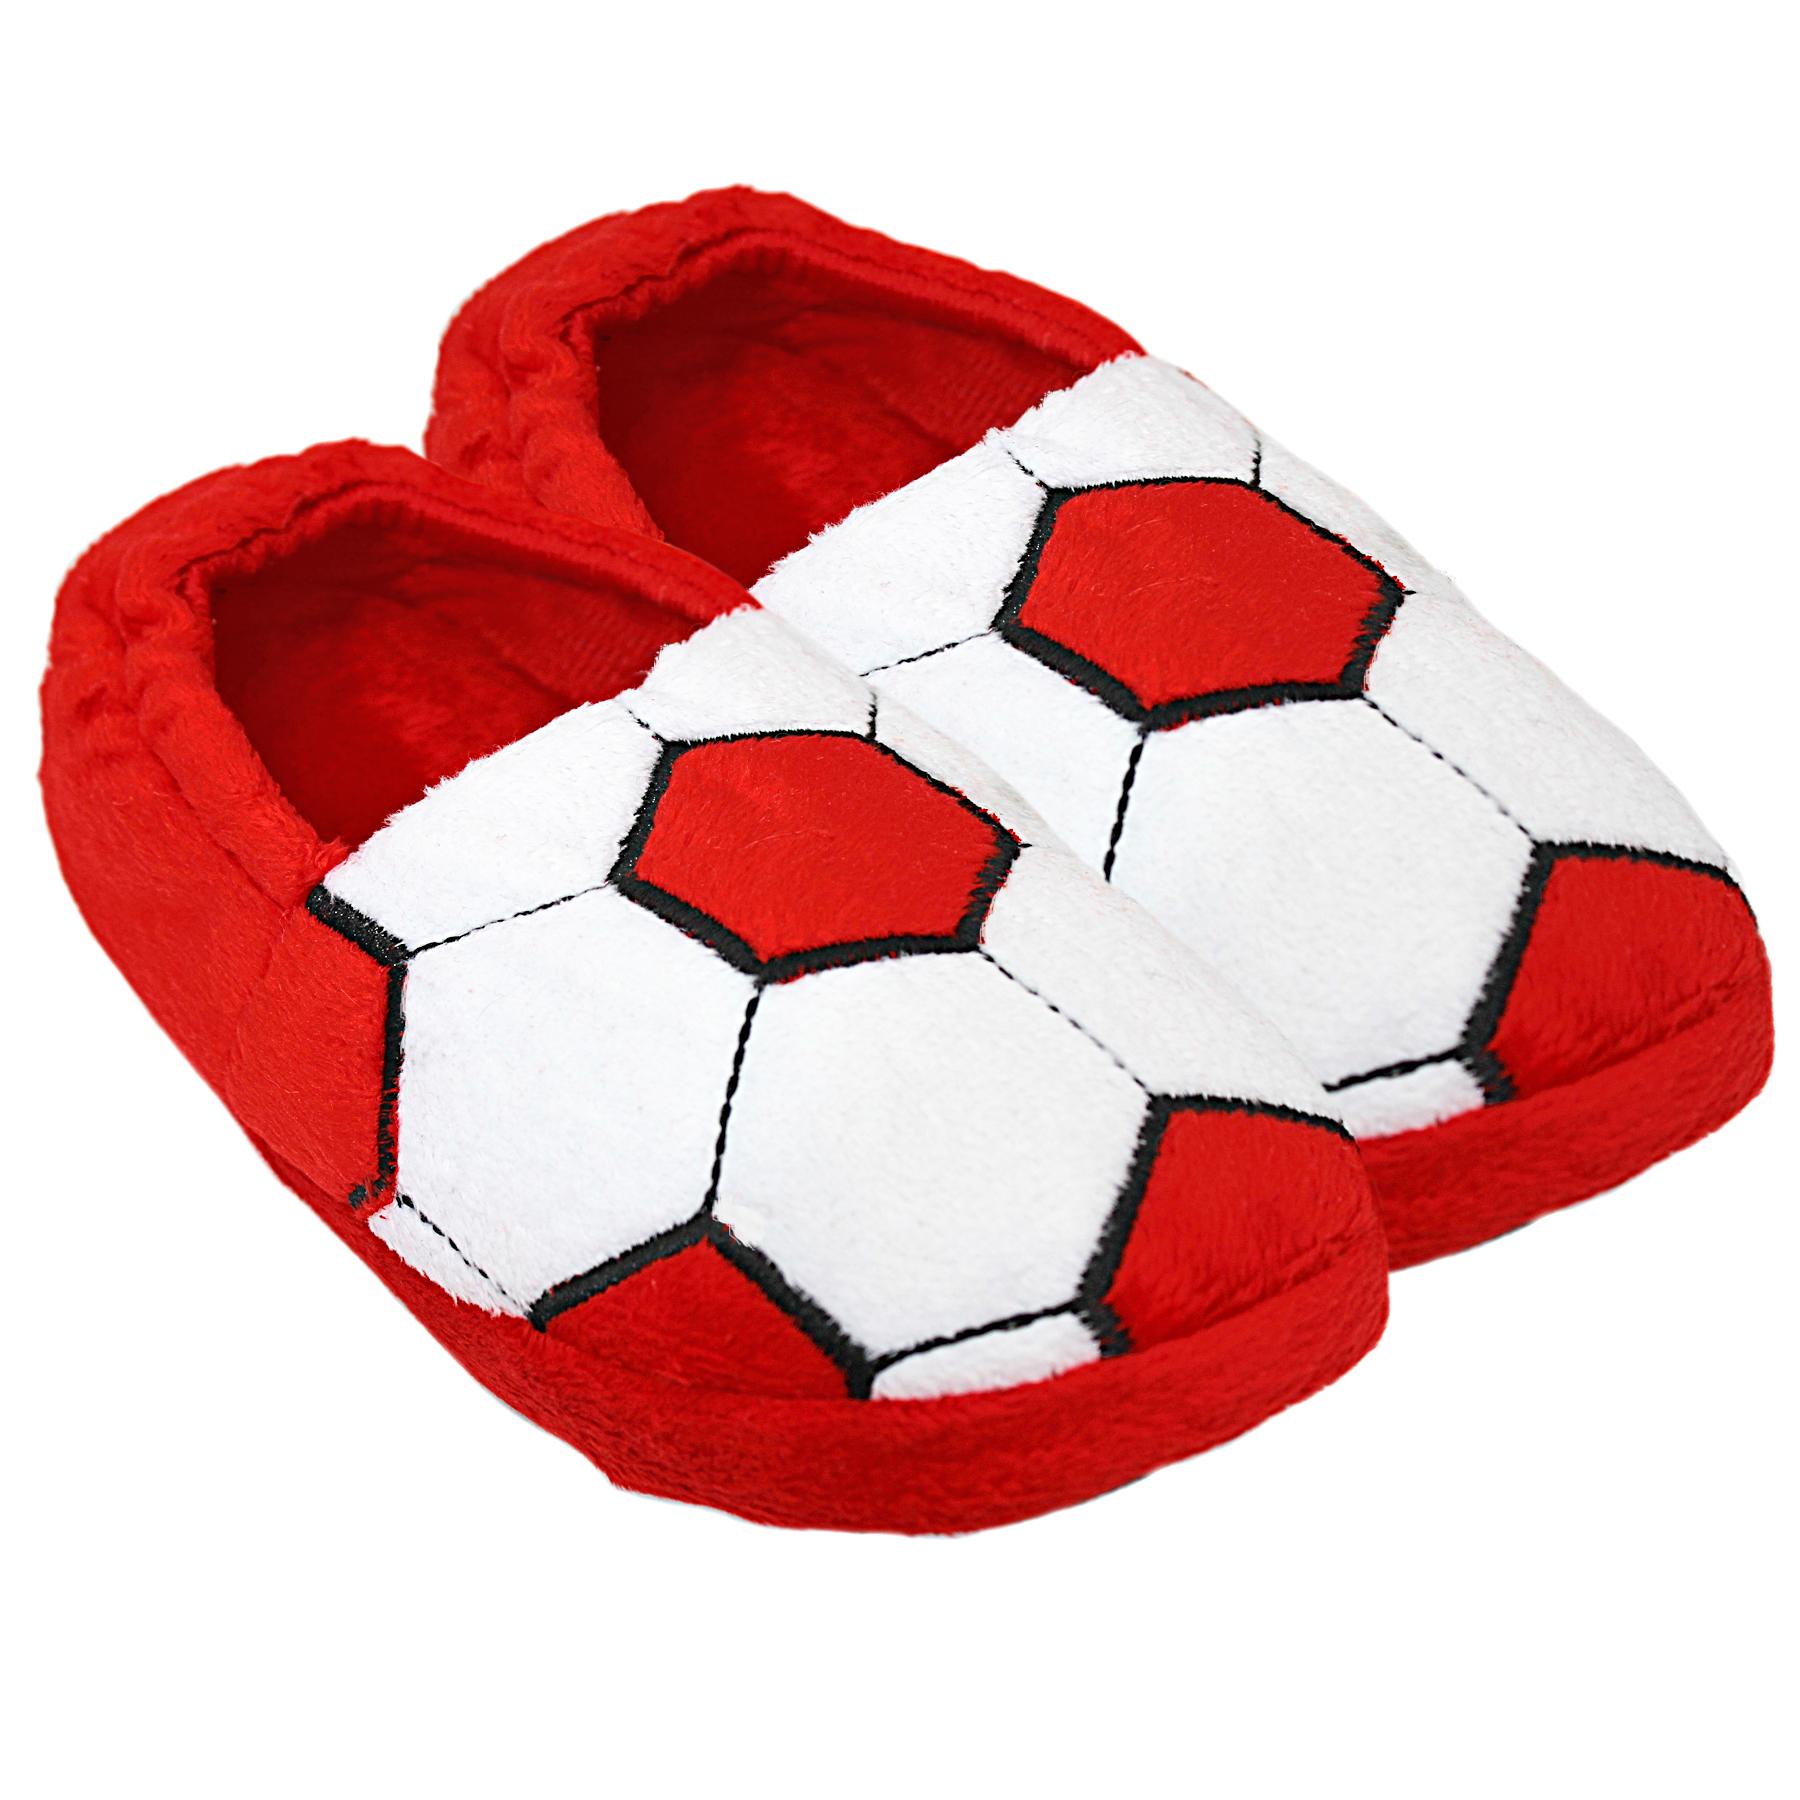 Slumberz Red & White Football Slippers